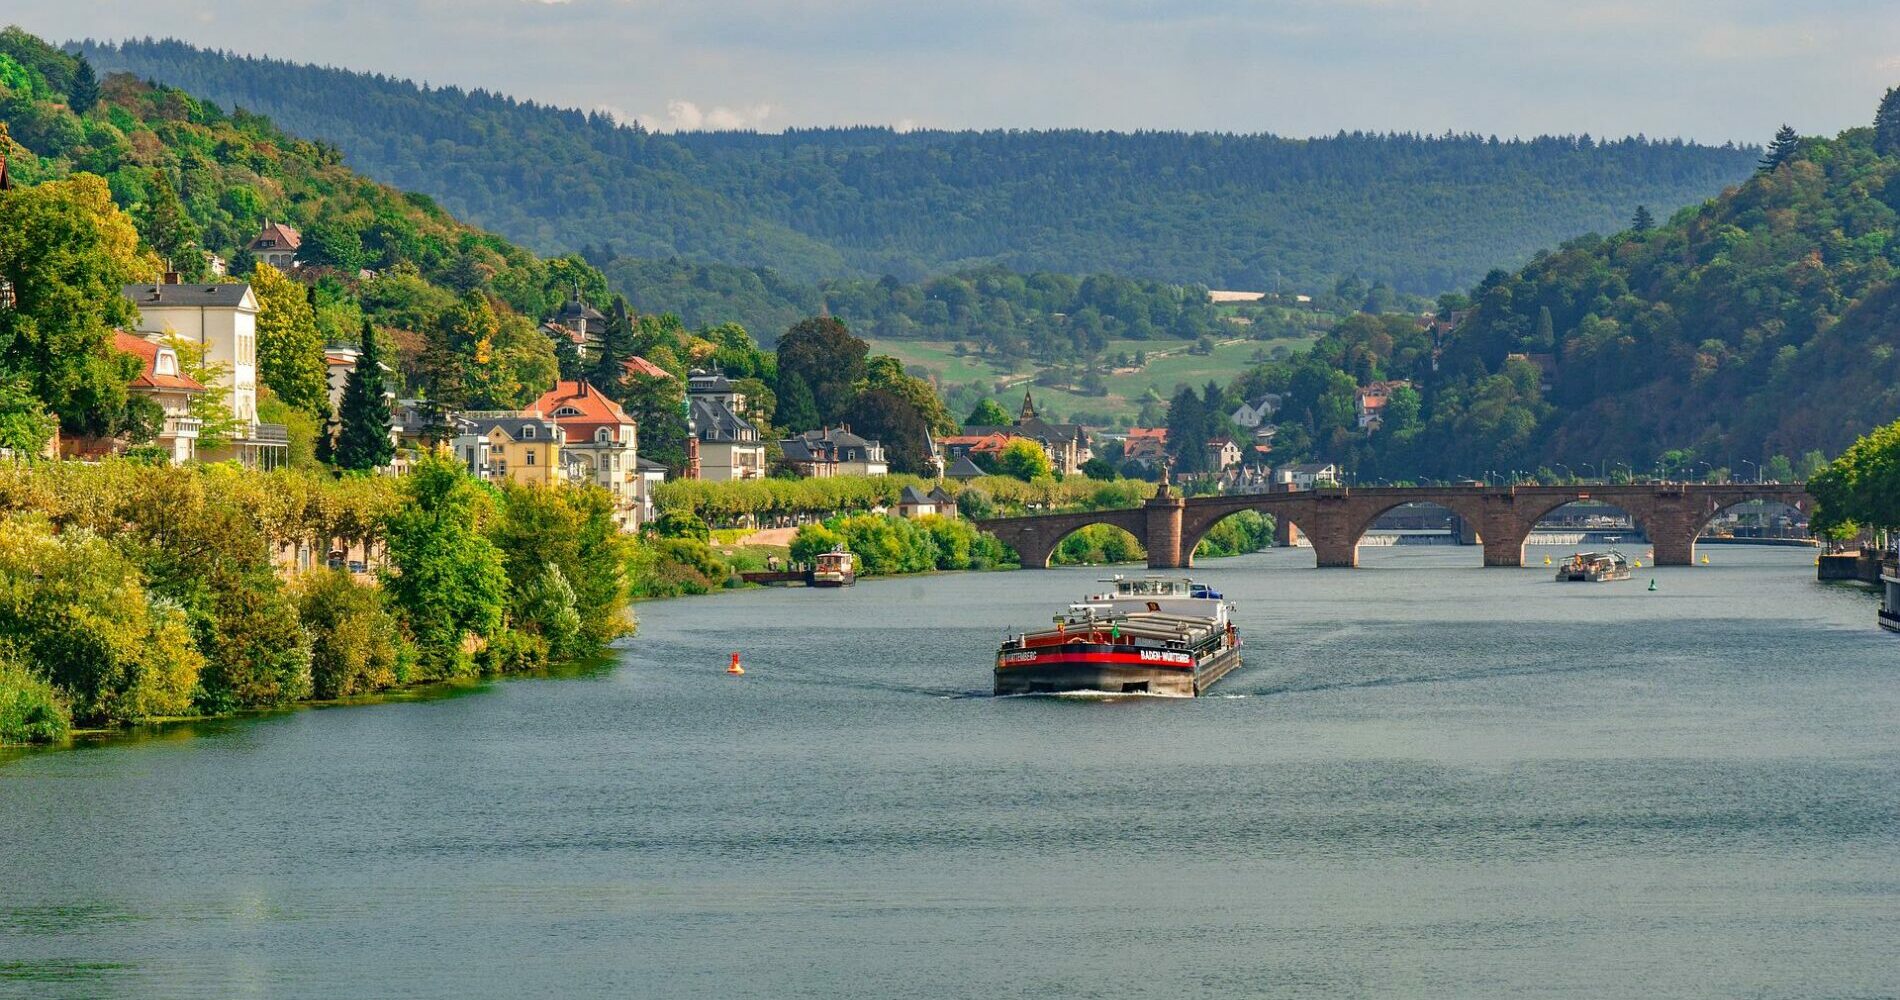 Städtereise nach Heidelberg - die Stadt am Neckar. Preiswerter Städtereise-Urlaub